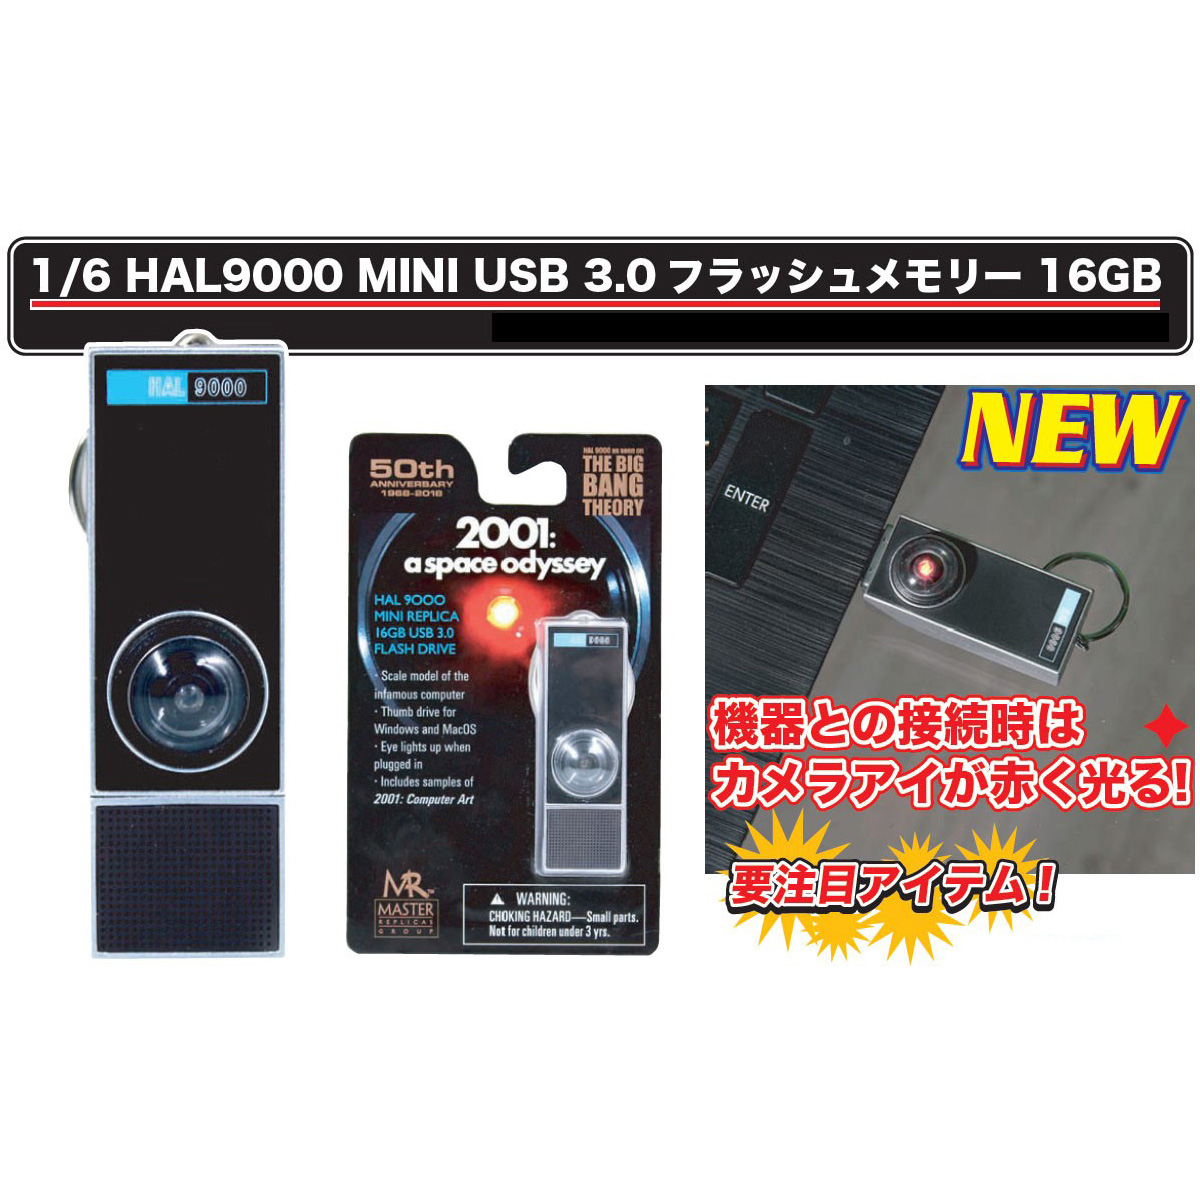 2001年宇宙の旅『HAL9000 MINI USB 3.0 フラッシュメモリー 16GB』1/6 USBメモリ-004